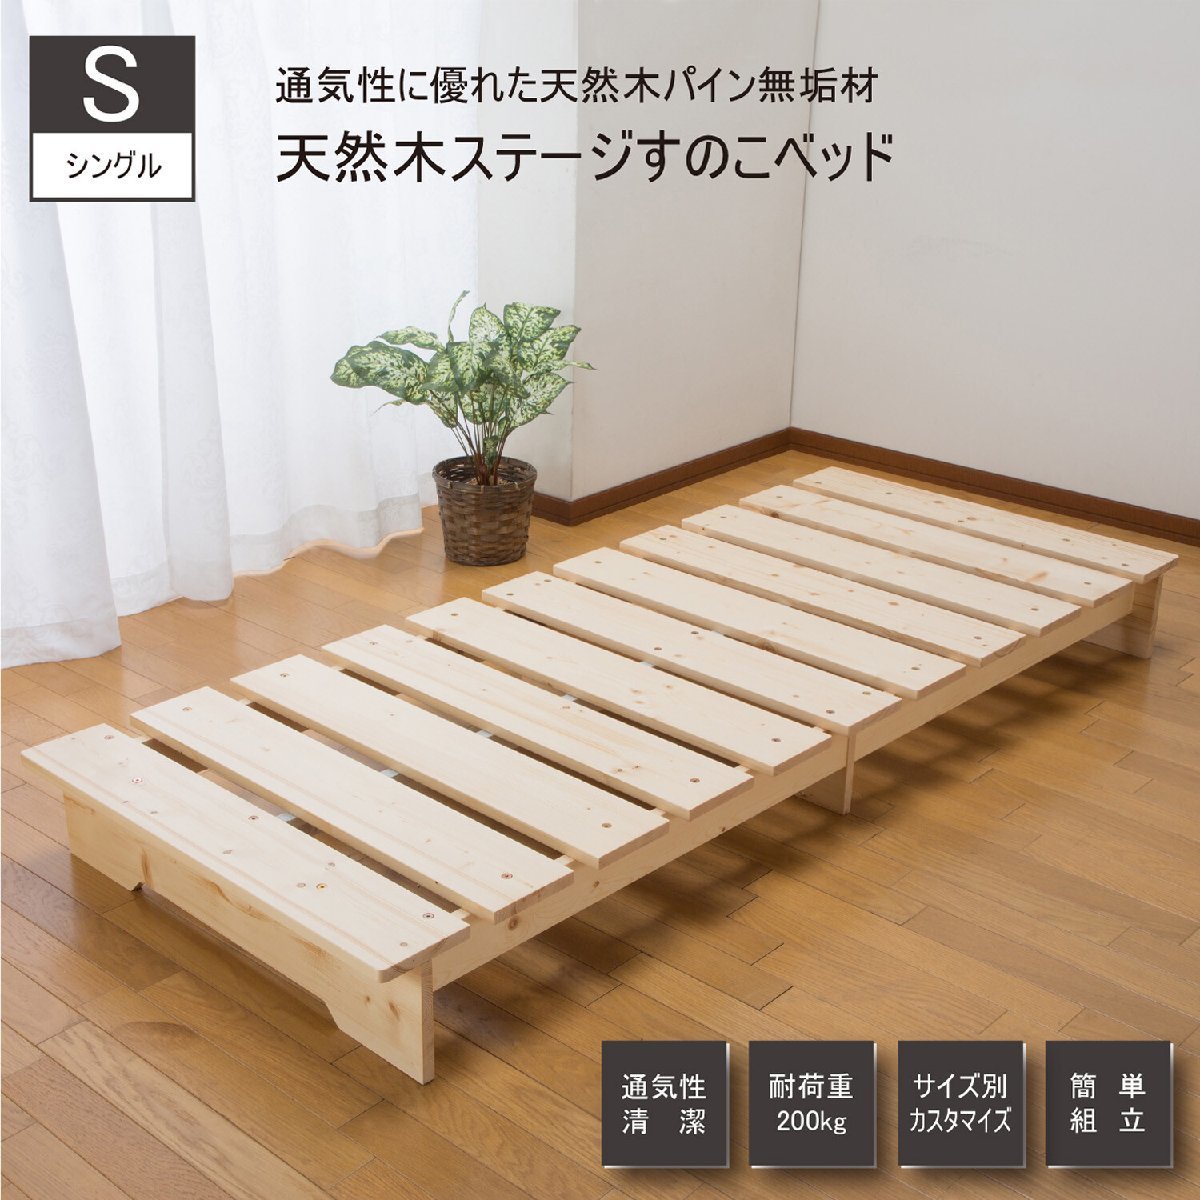 天然木ステージベッド シングル ZLF-101(すのこベッド カビ対策 湿気対策 除湿 天然木 防湿)